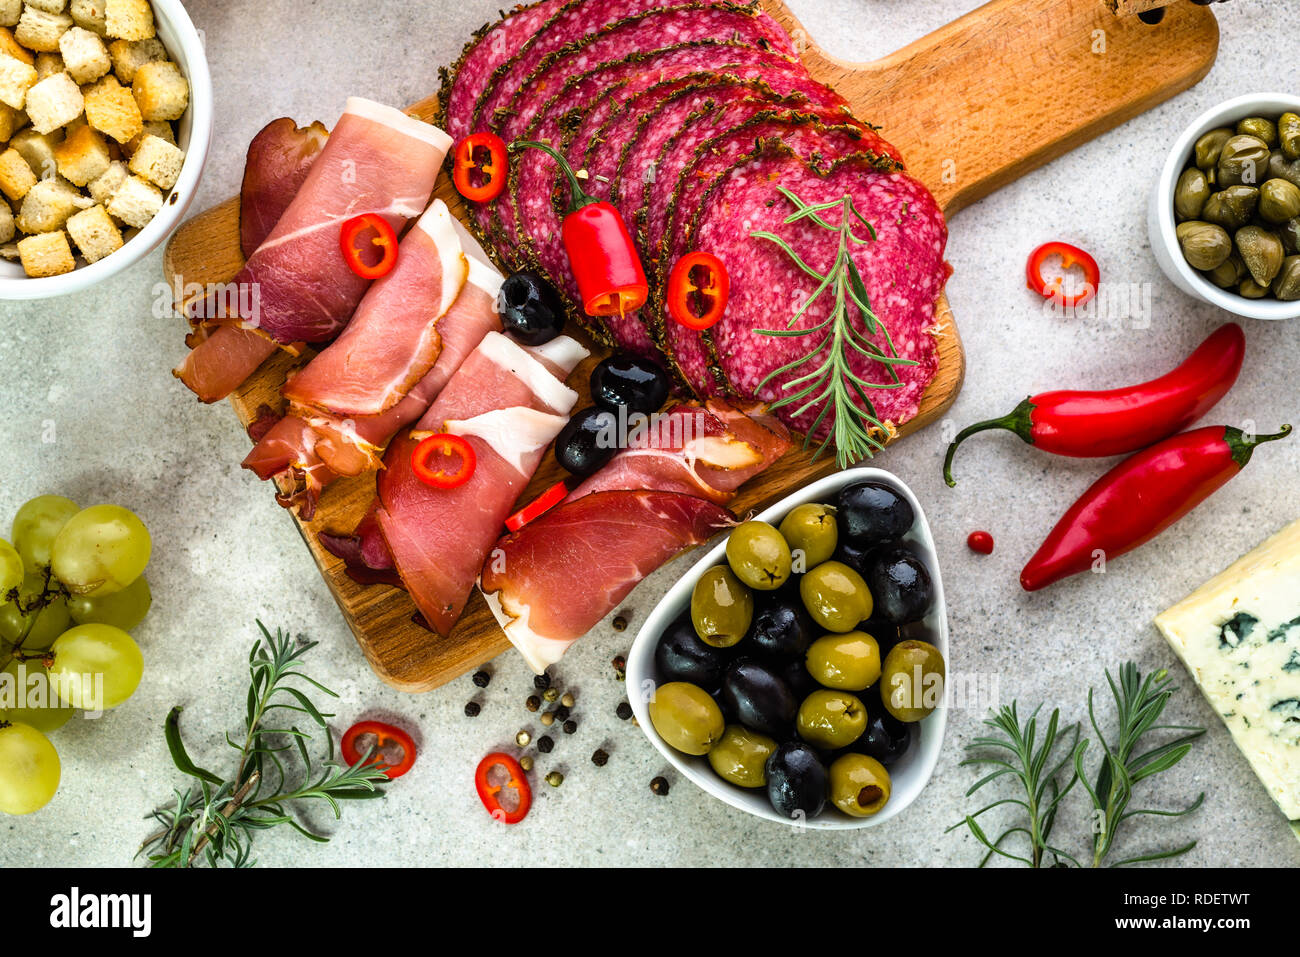 Cucina mediterranea con selezione di antipasti, dieta italiana con il piccante piatti freddi su tavola Foto Stock